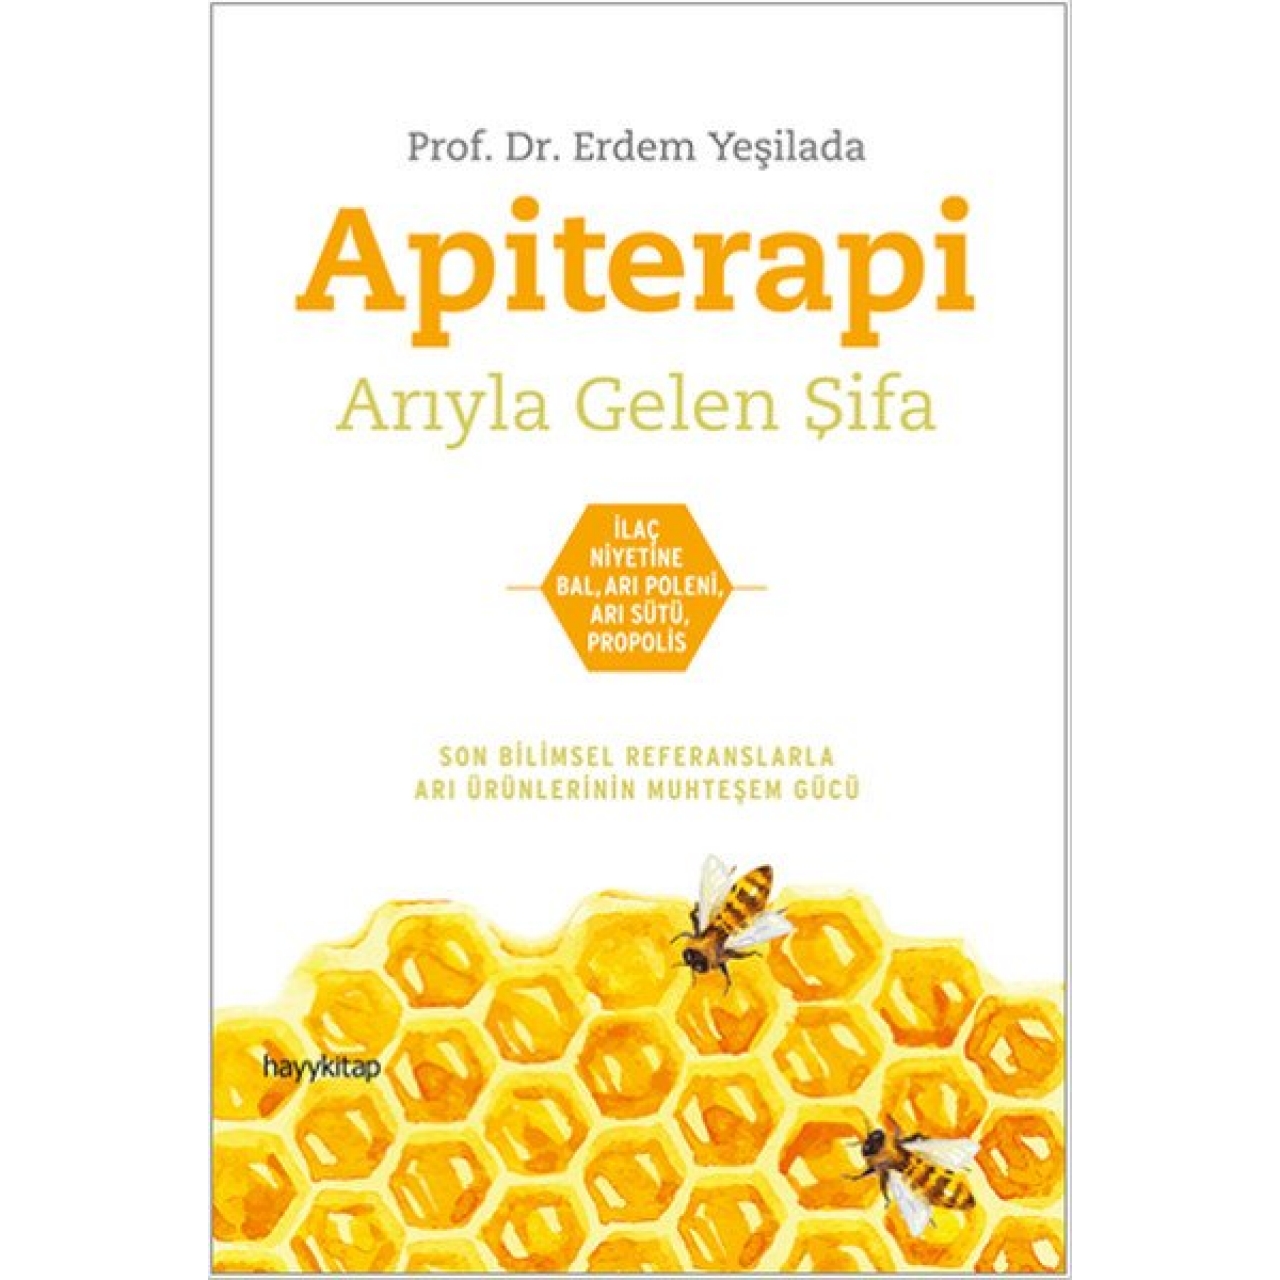 Apiterapi - Arıyla Gelen Şifa Prof Dr Erdem YEŞİLADA